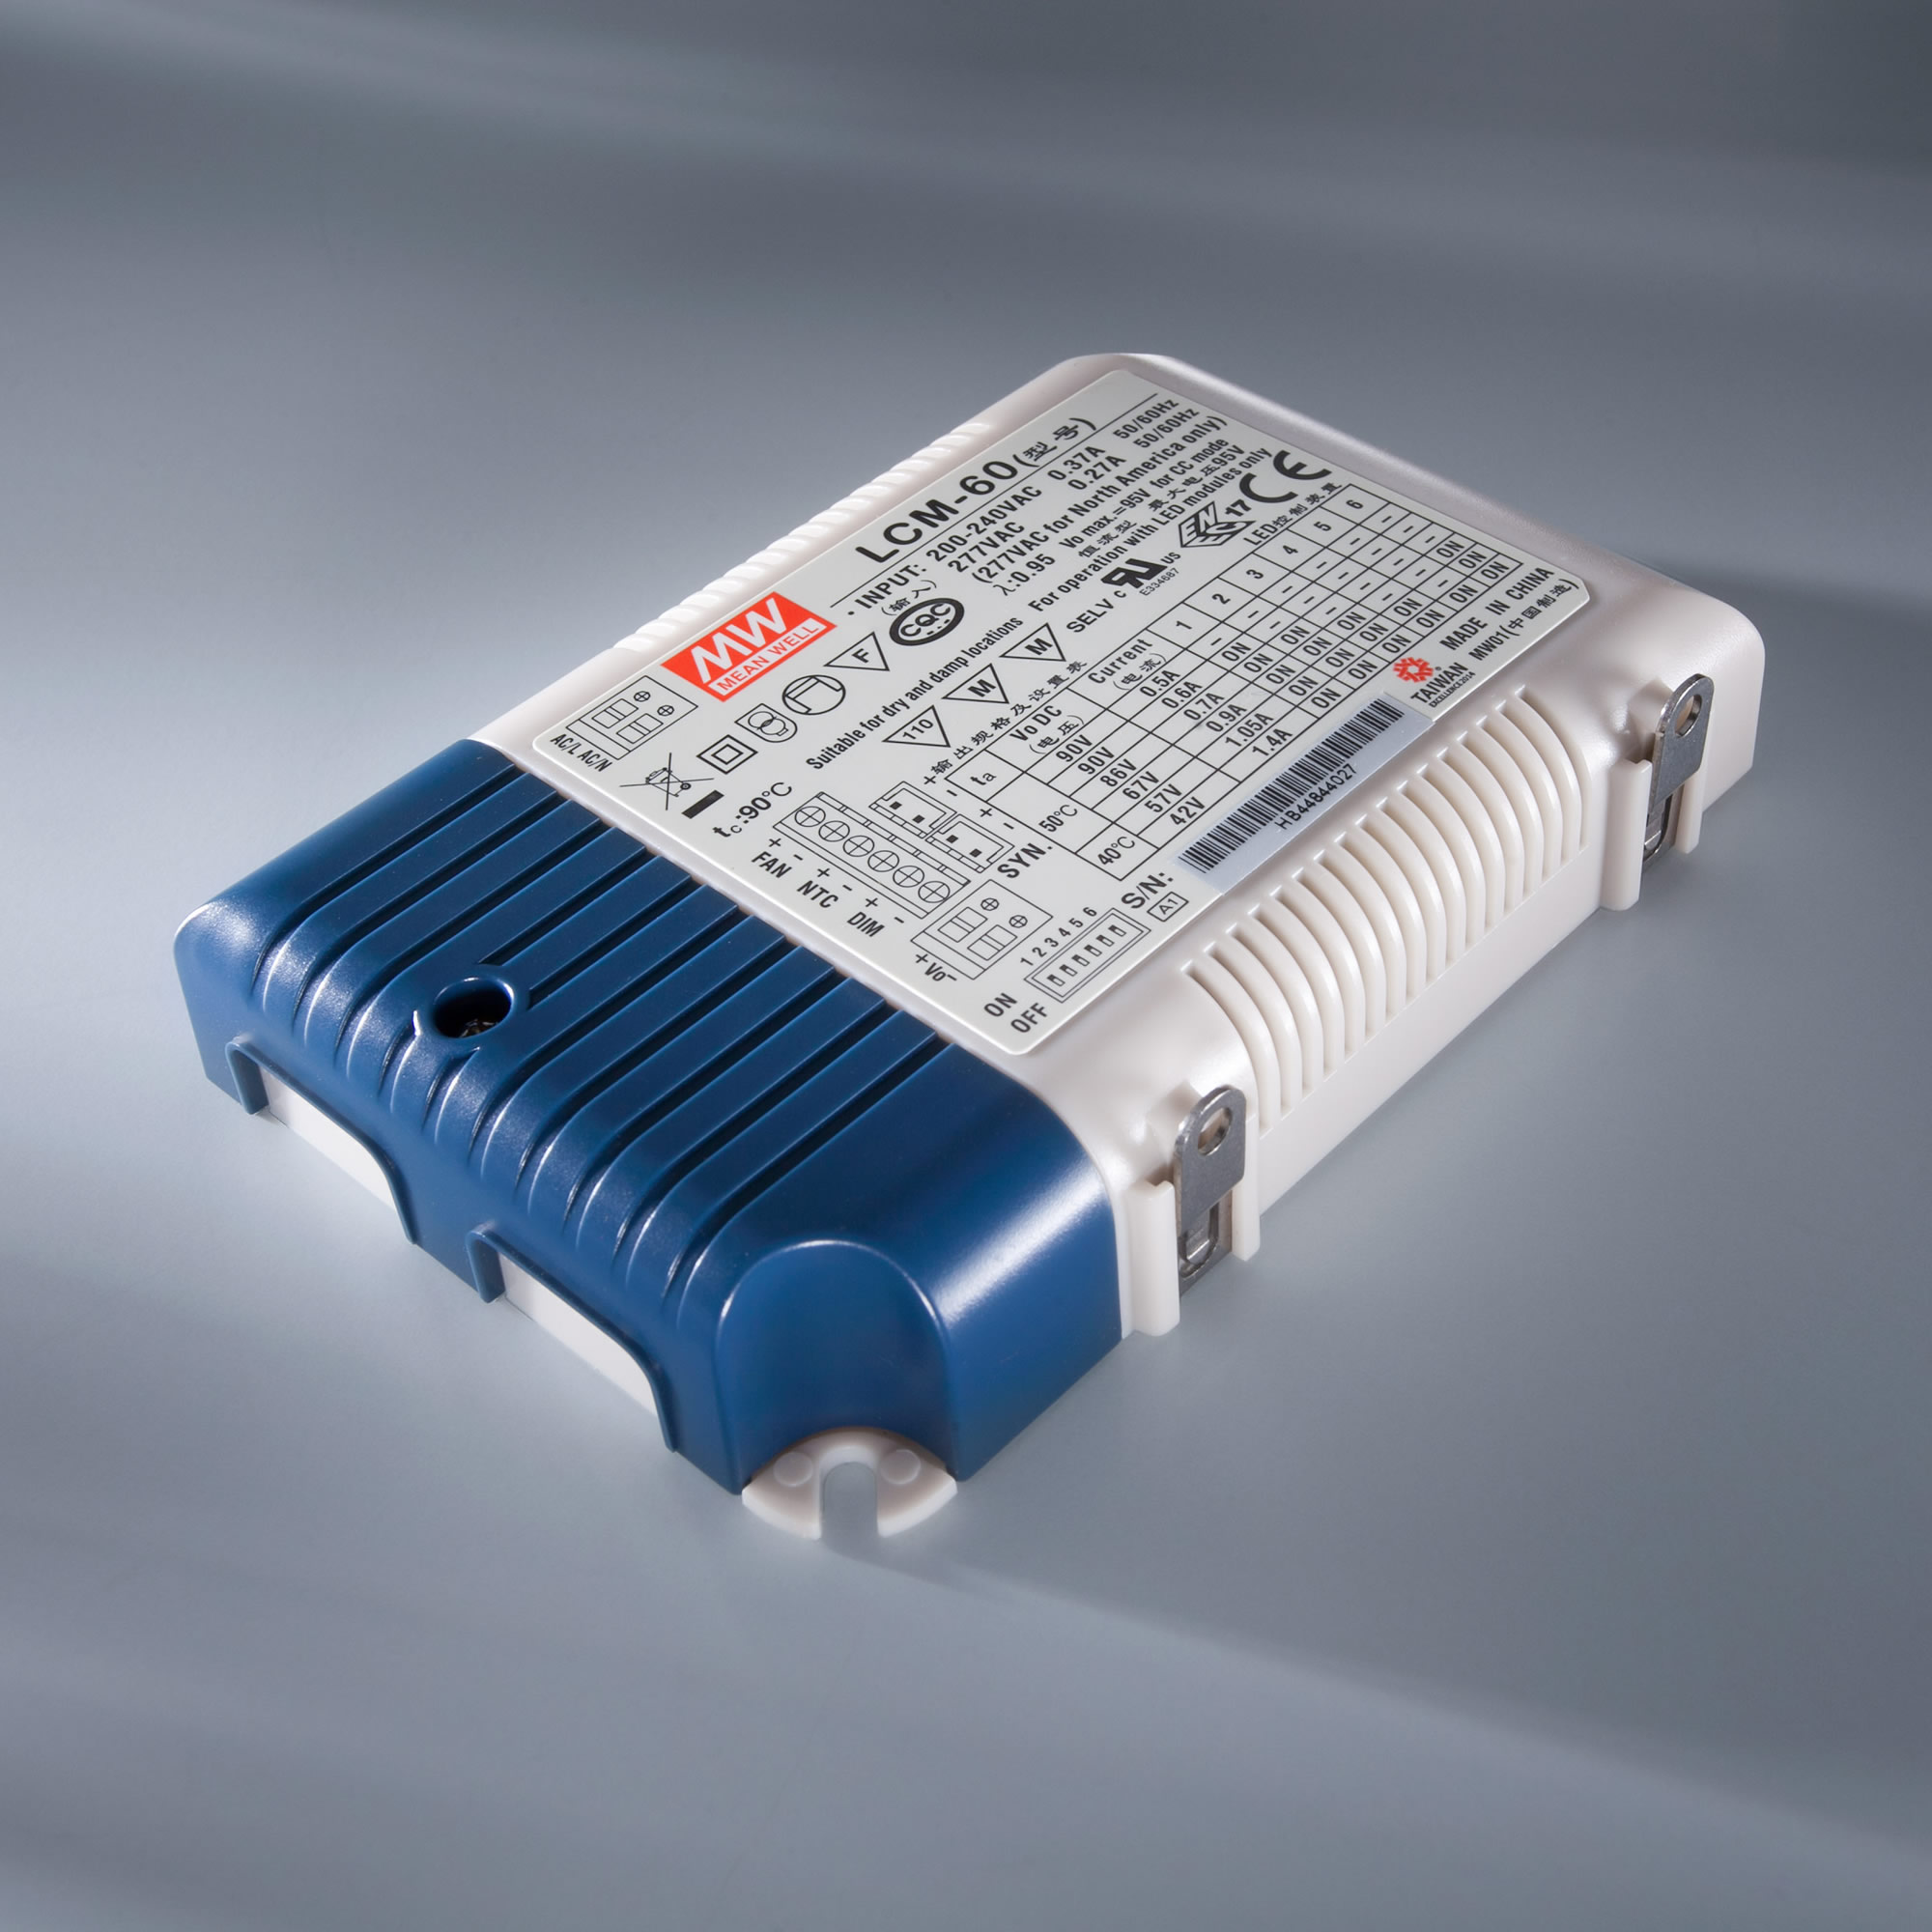 MEAN WELL LED Driver transformador de corrente constante LCM-60 230V a 2-90V 500 > 1400mA DIM